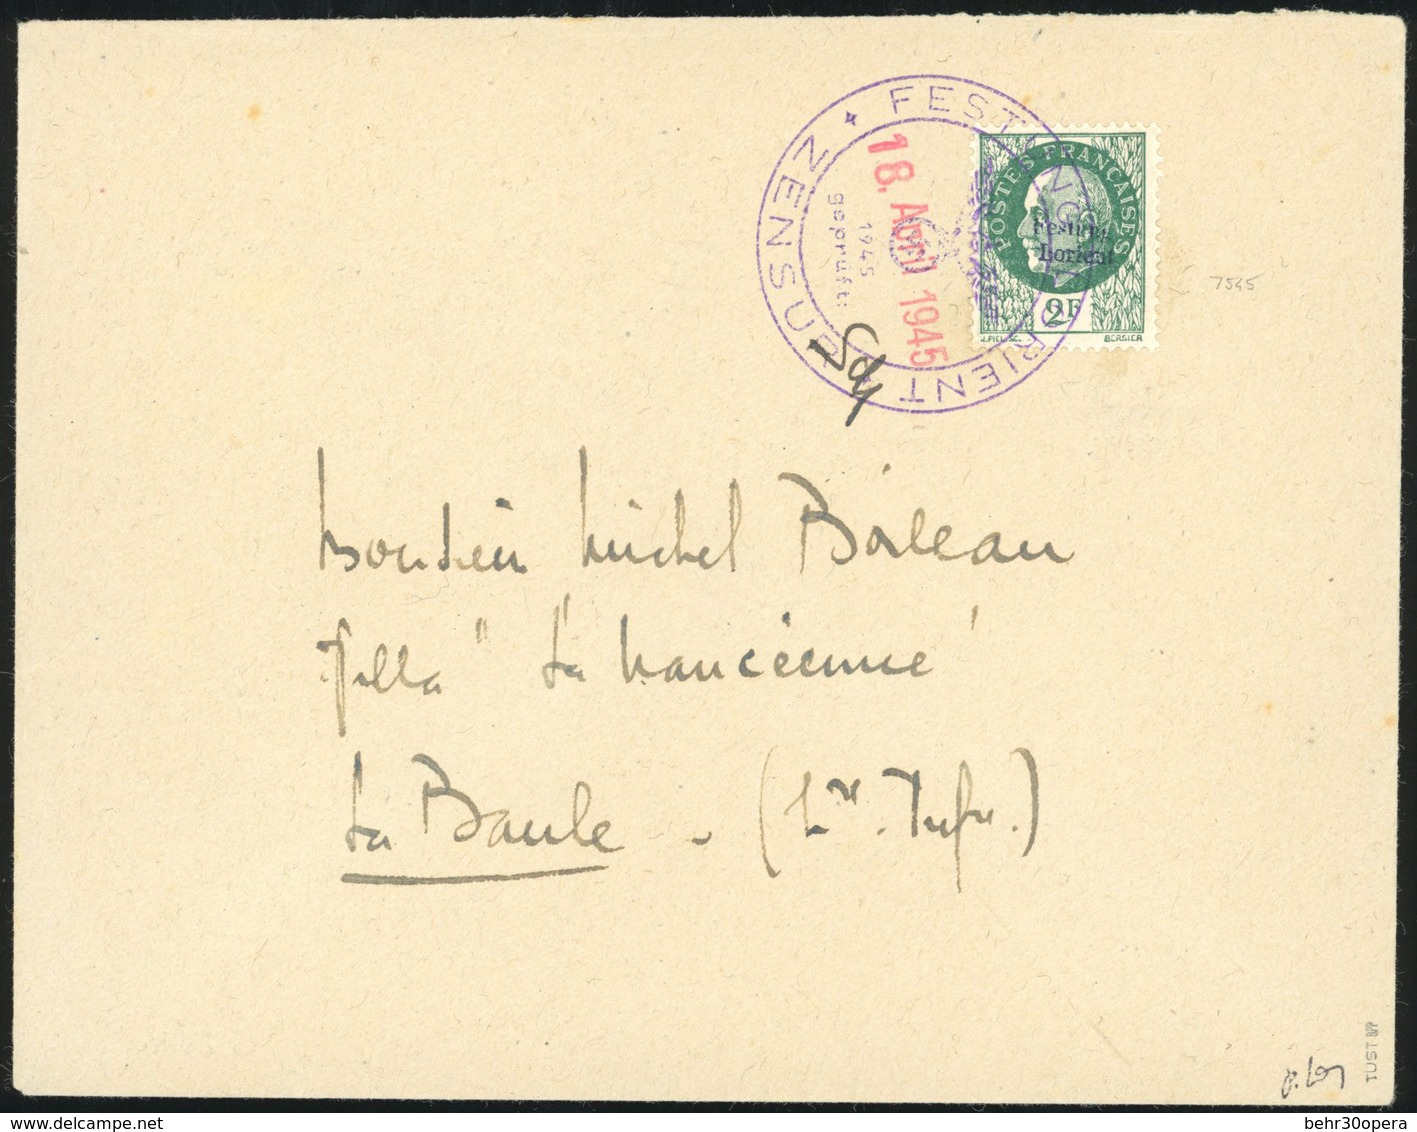 O N°11 - LORIENT. 2F. Vert Obl. S/lettre Frappée Du CàD De FESTUNG - LORIENT Du 18 Avril 1945 à Destination De LA BAULE. - Liberazione